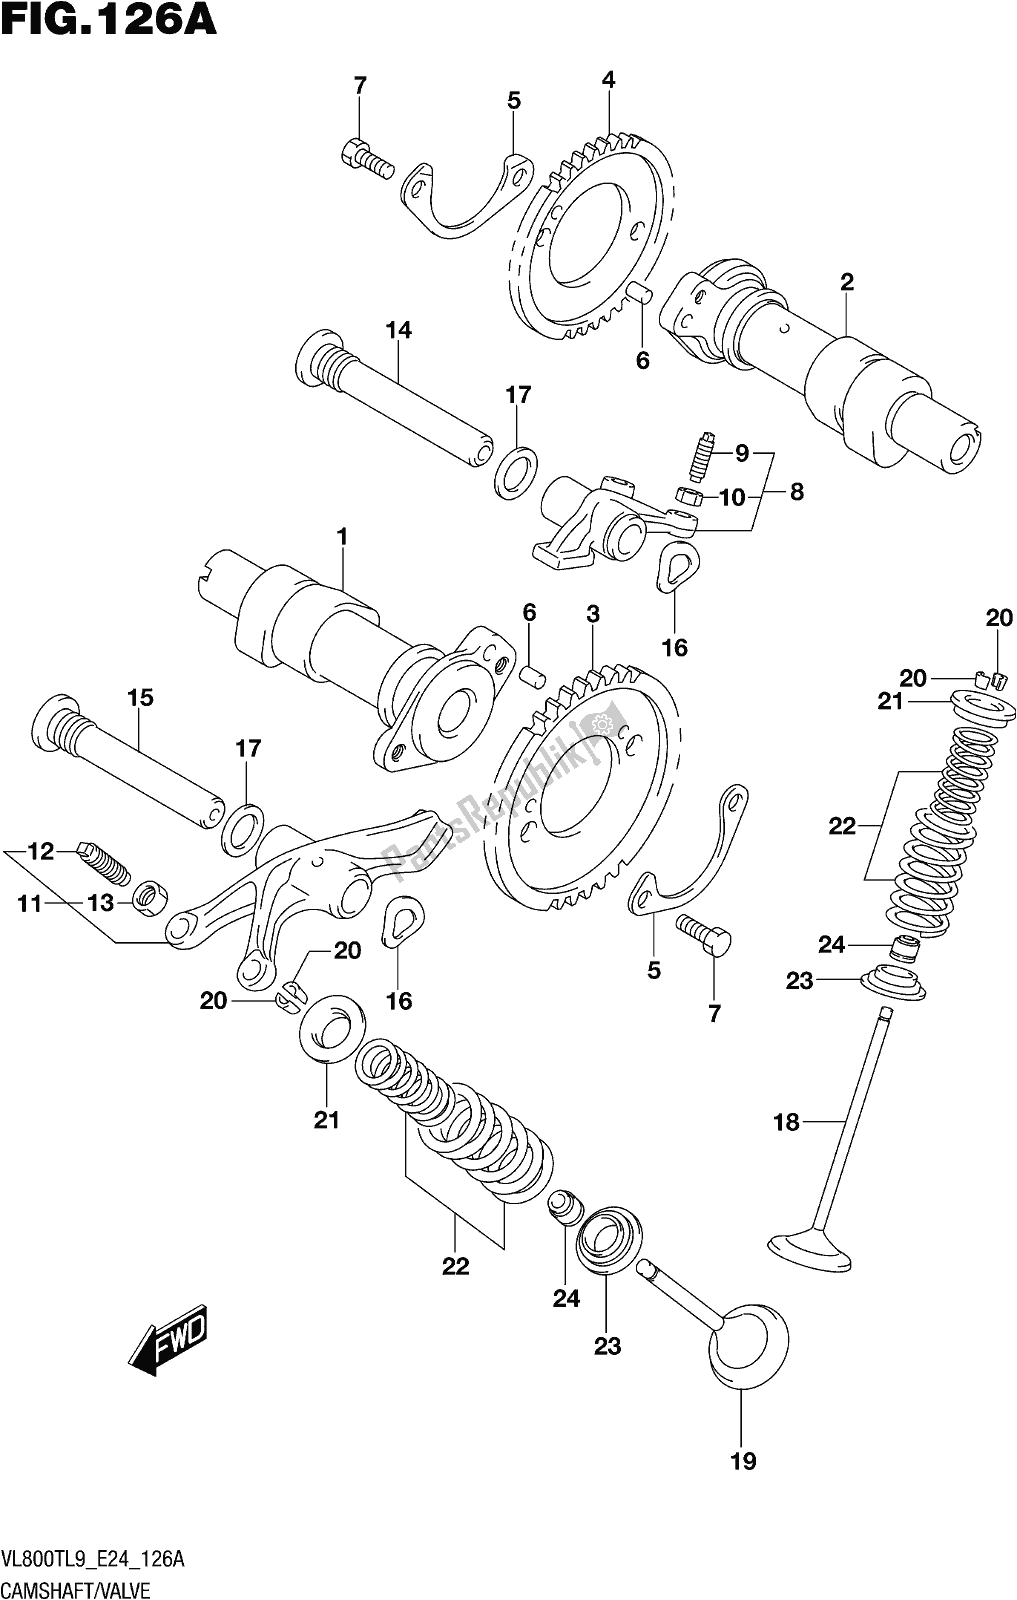 Alle onderdelen voor de Fig. 126a Camshaft/valve van de Suzuki VL 800T 2019